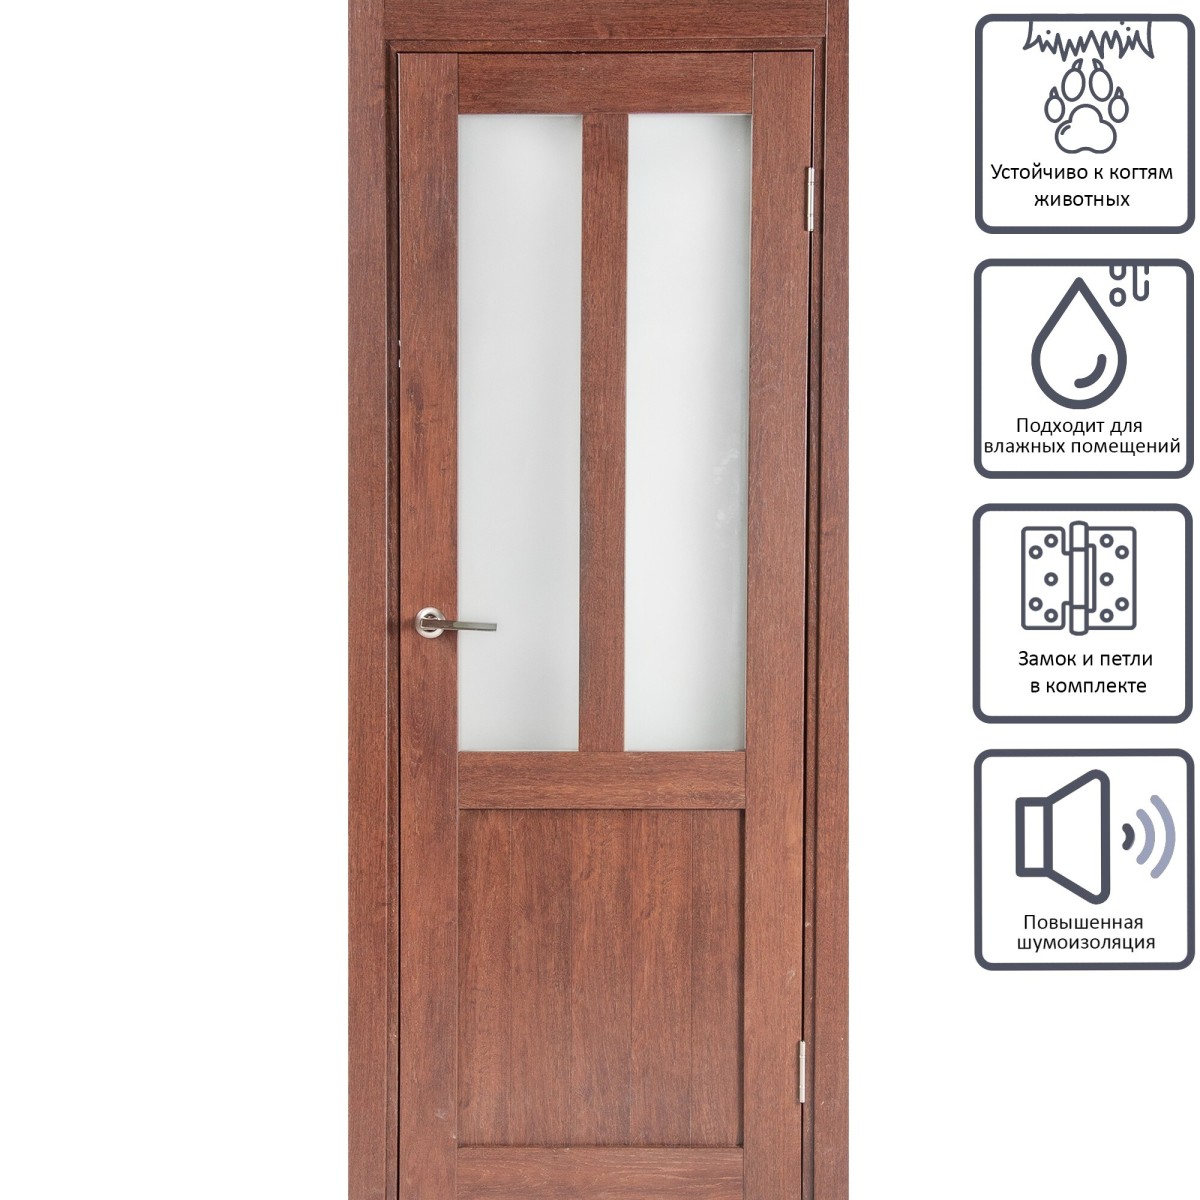 Дверь межкомнатная остеклённая Кантри 90x200 см, ПВХ, цвет дуб сан-томе, с фурнитурой